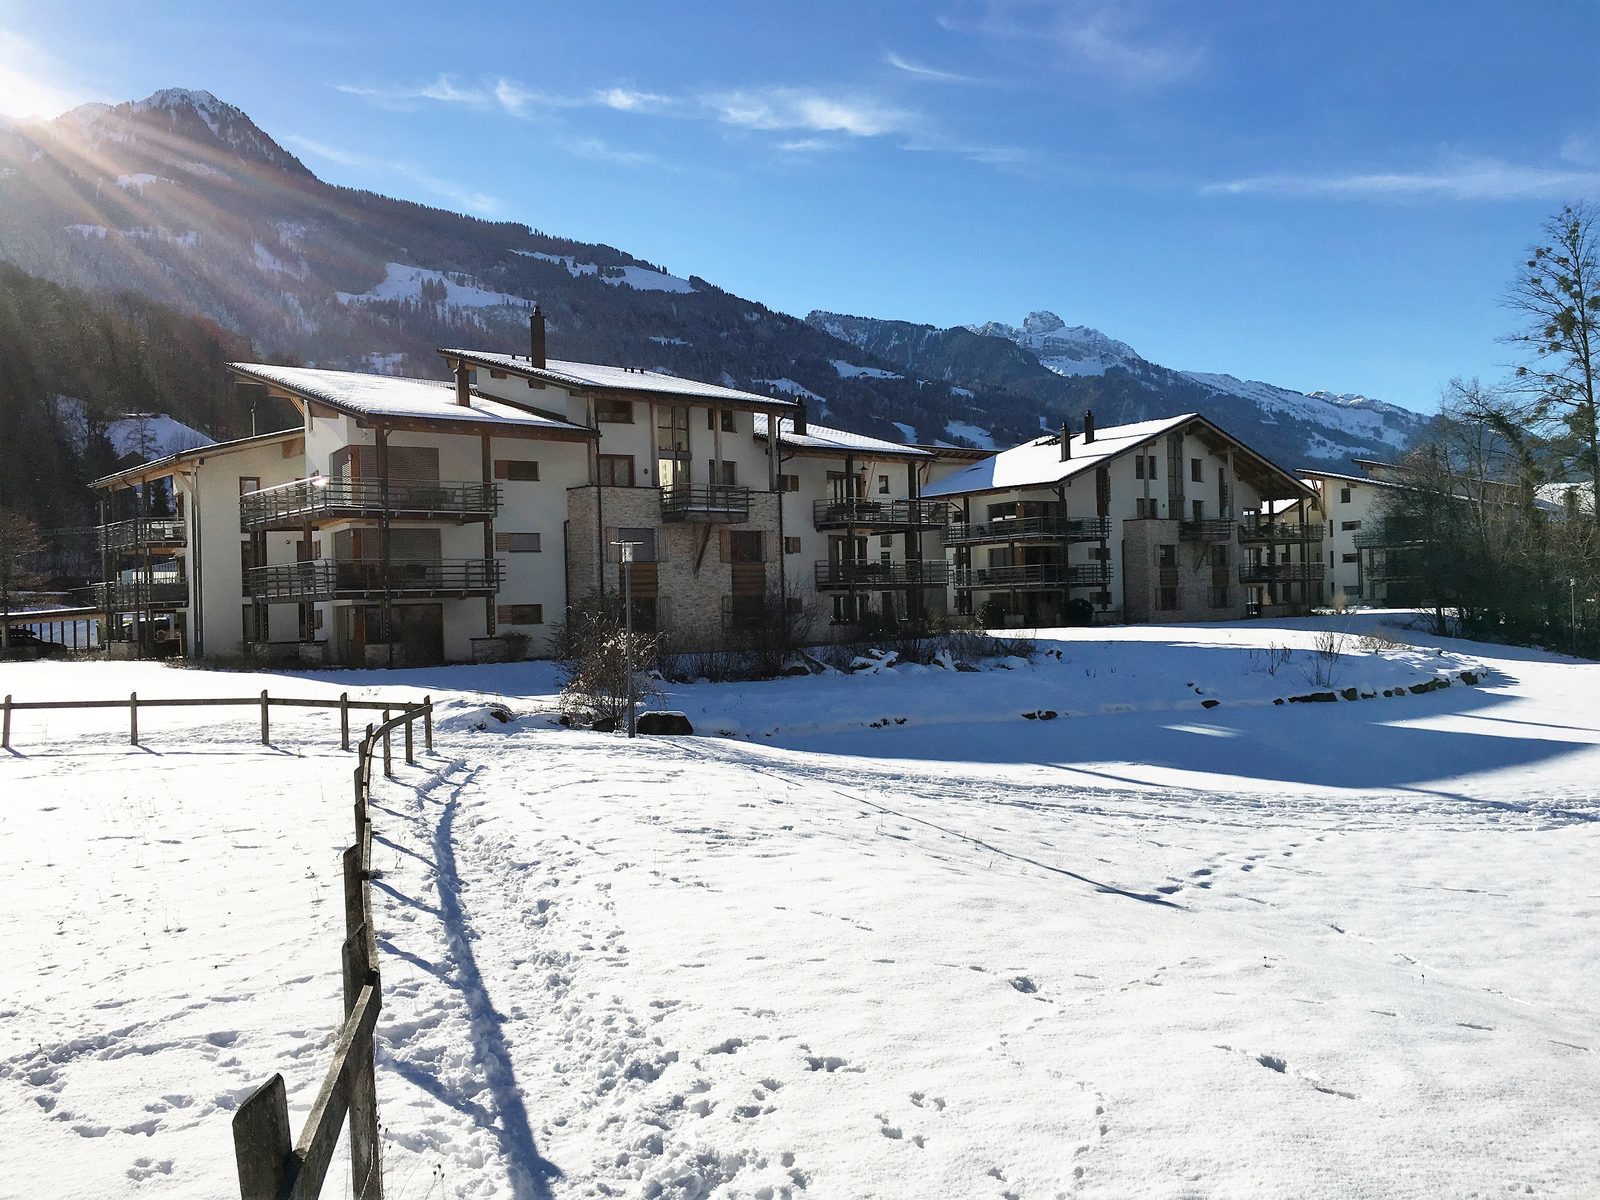 Resort Walensee Heidiland Flumsberg Schweiz, am Fuße des Flumsbergs, für einen perfekten Wintersporturlaub auf Skiern